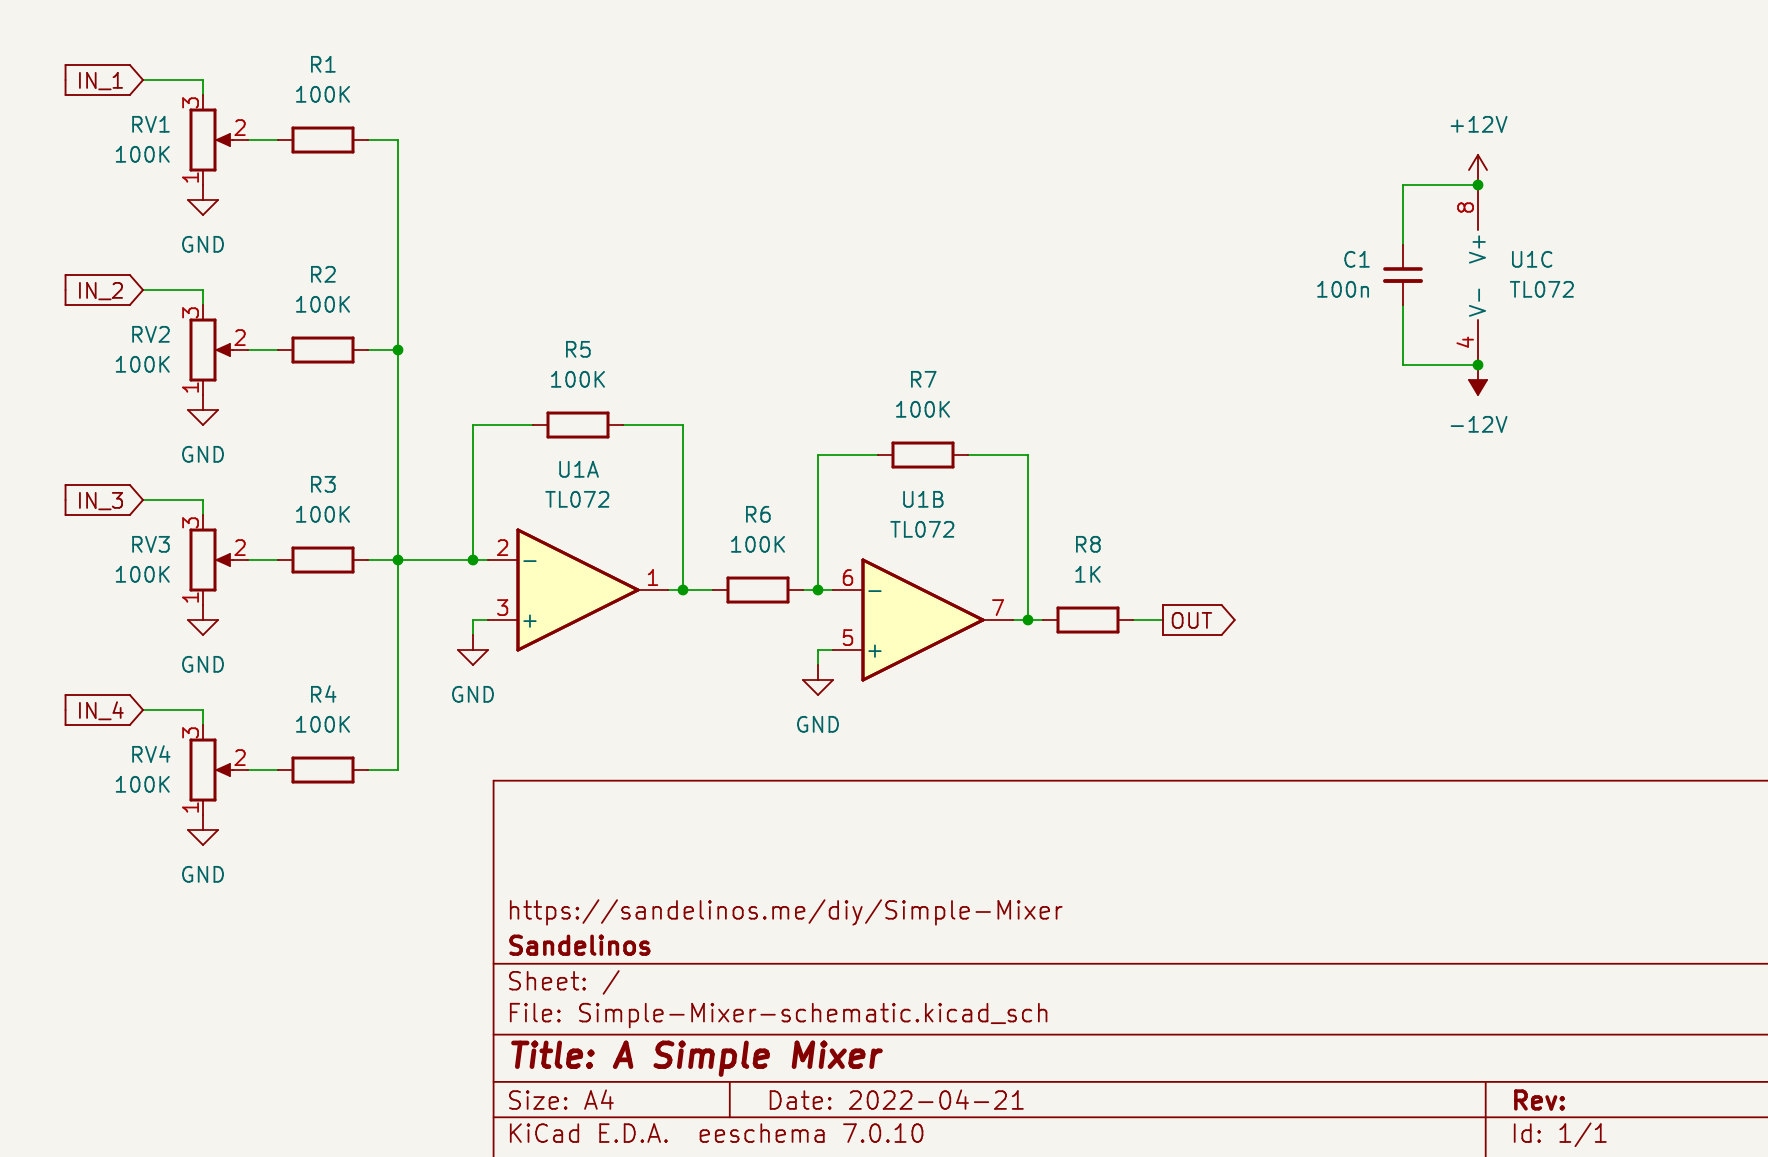 Simple Mixer schematic